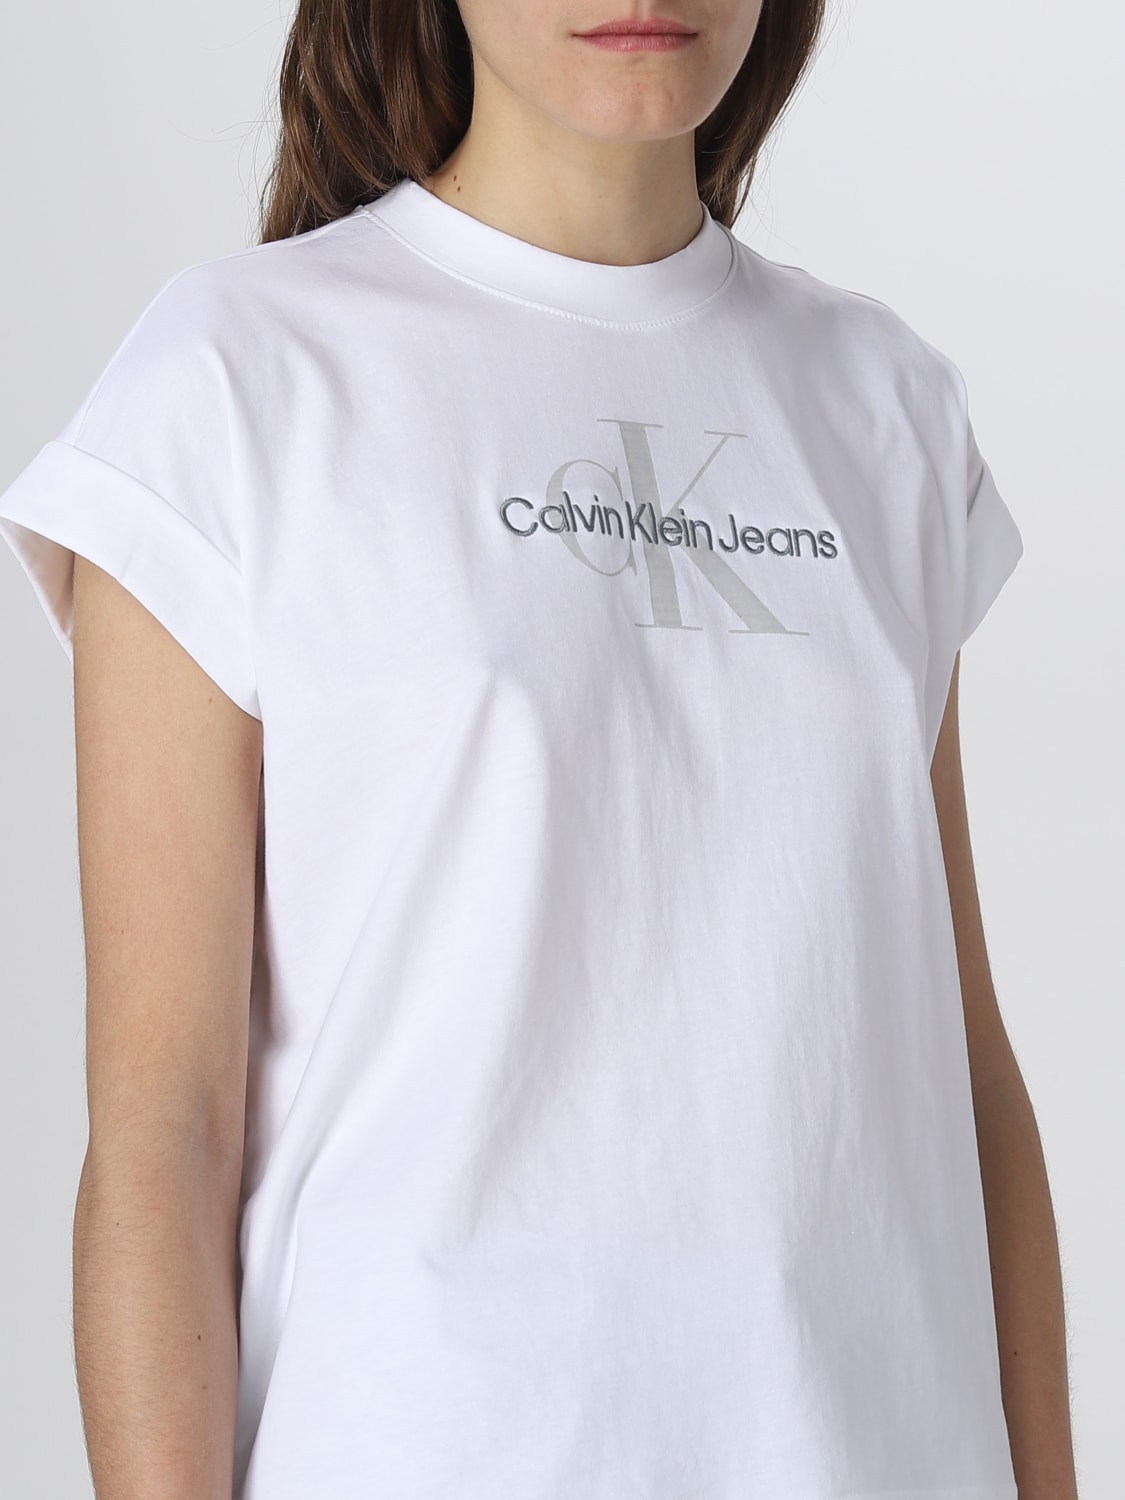 カルバンクライン レディース Tシャツ ホワイト Lサイズ